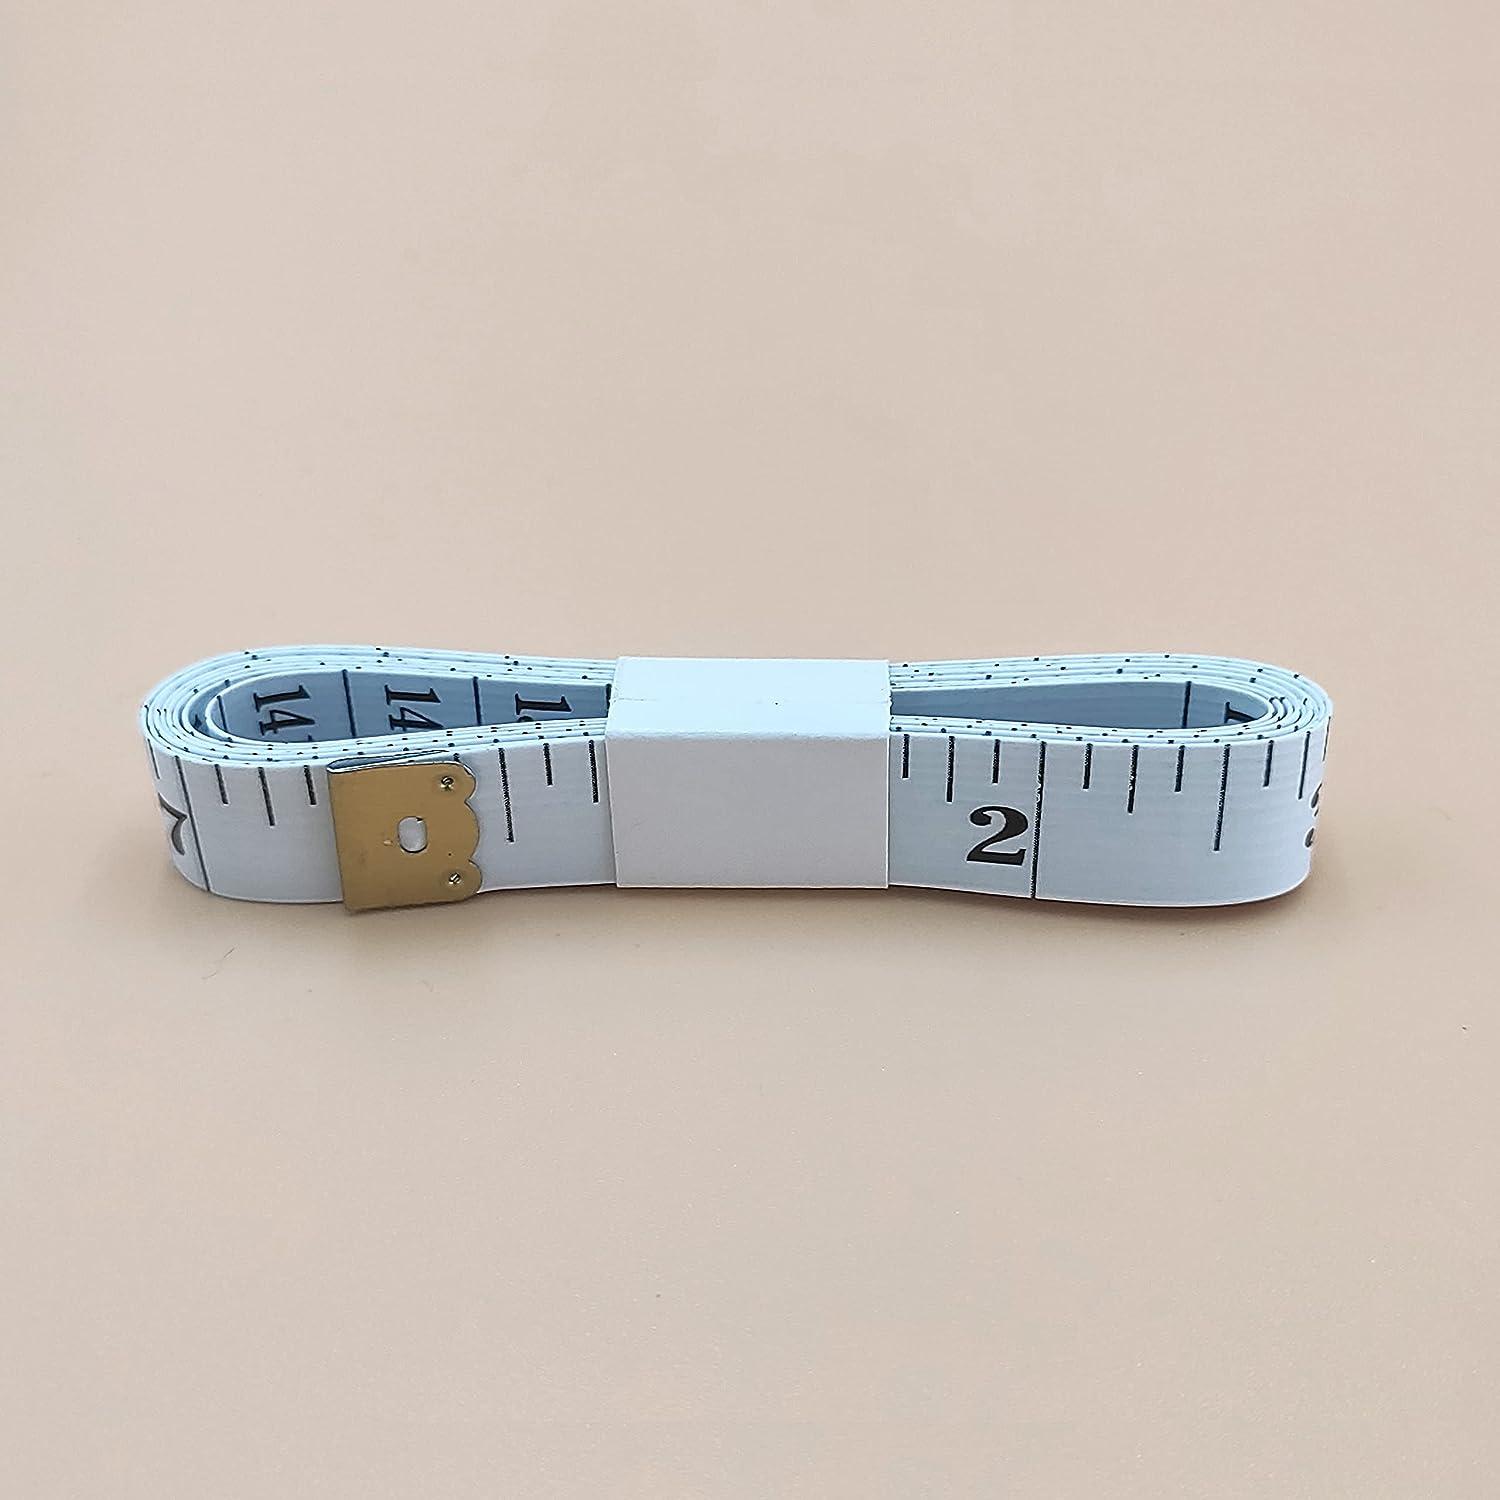 FF Elaine 24 Pcs Double-Scale 60-Inch/150cm Soft Tape Measure